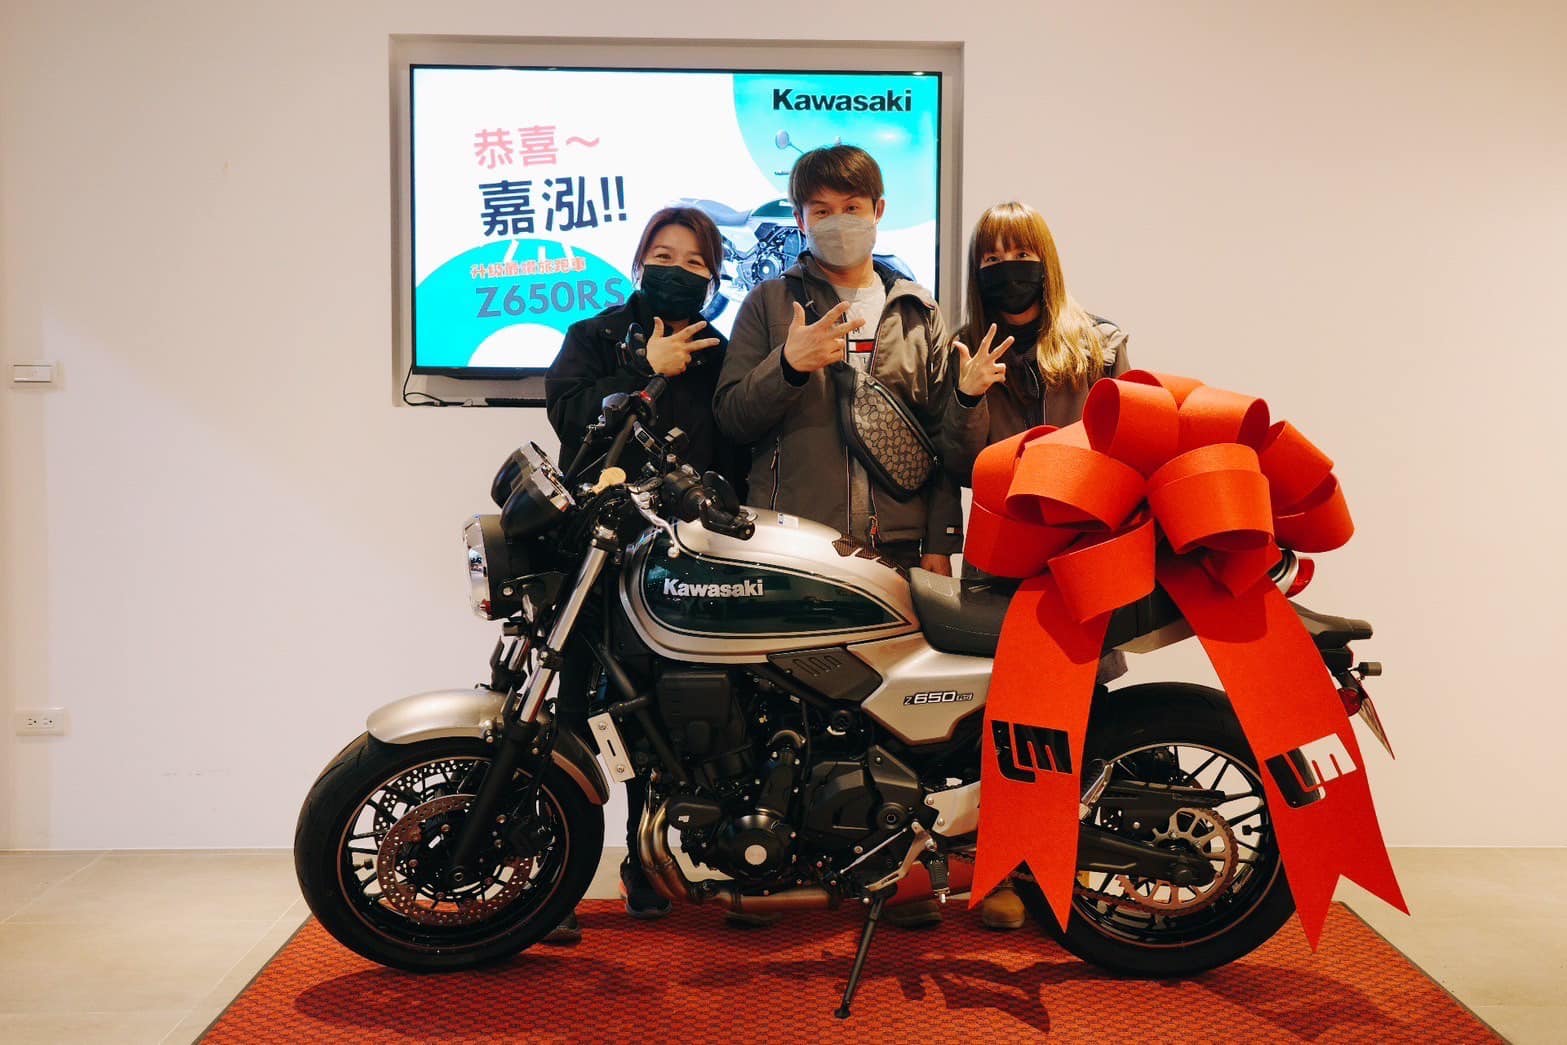 Kawasaki Z650RS新車出售中 《 康妮賀成交 》恭喜2位車主成功圓夢 人生首台紅牌 Kawasaki Z650RS 來桃園找康妮購車 一同出遊 | 敏傑車業資深銷售專員 康妮 Connie